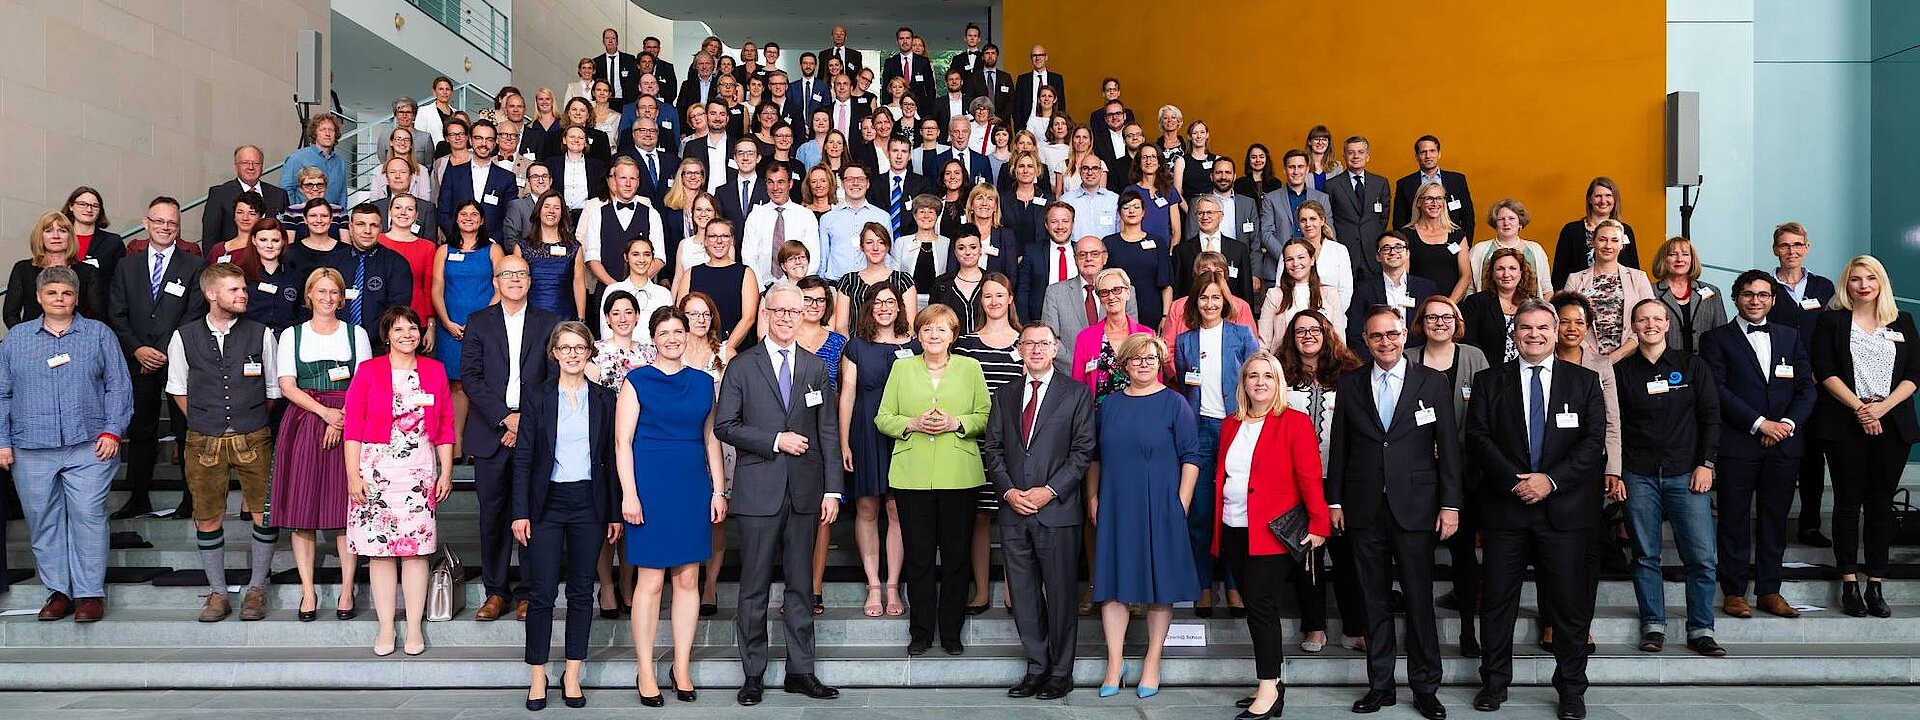 Gruppenfoto von den ZWEITZEUGEN bei der startsocial Preisverleihung mit Angela Merkel.